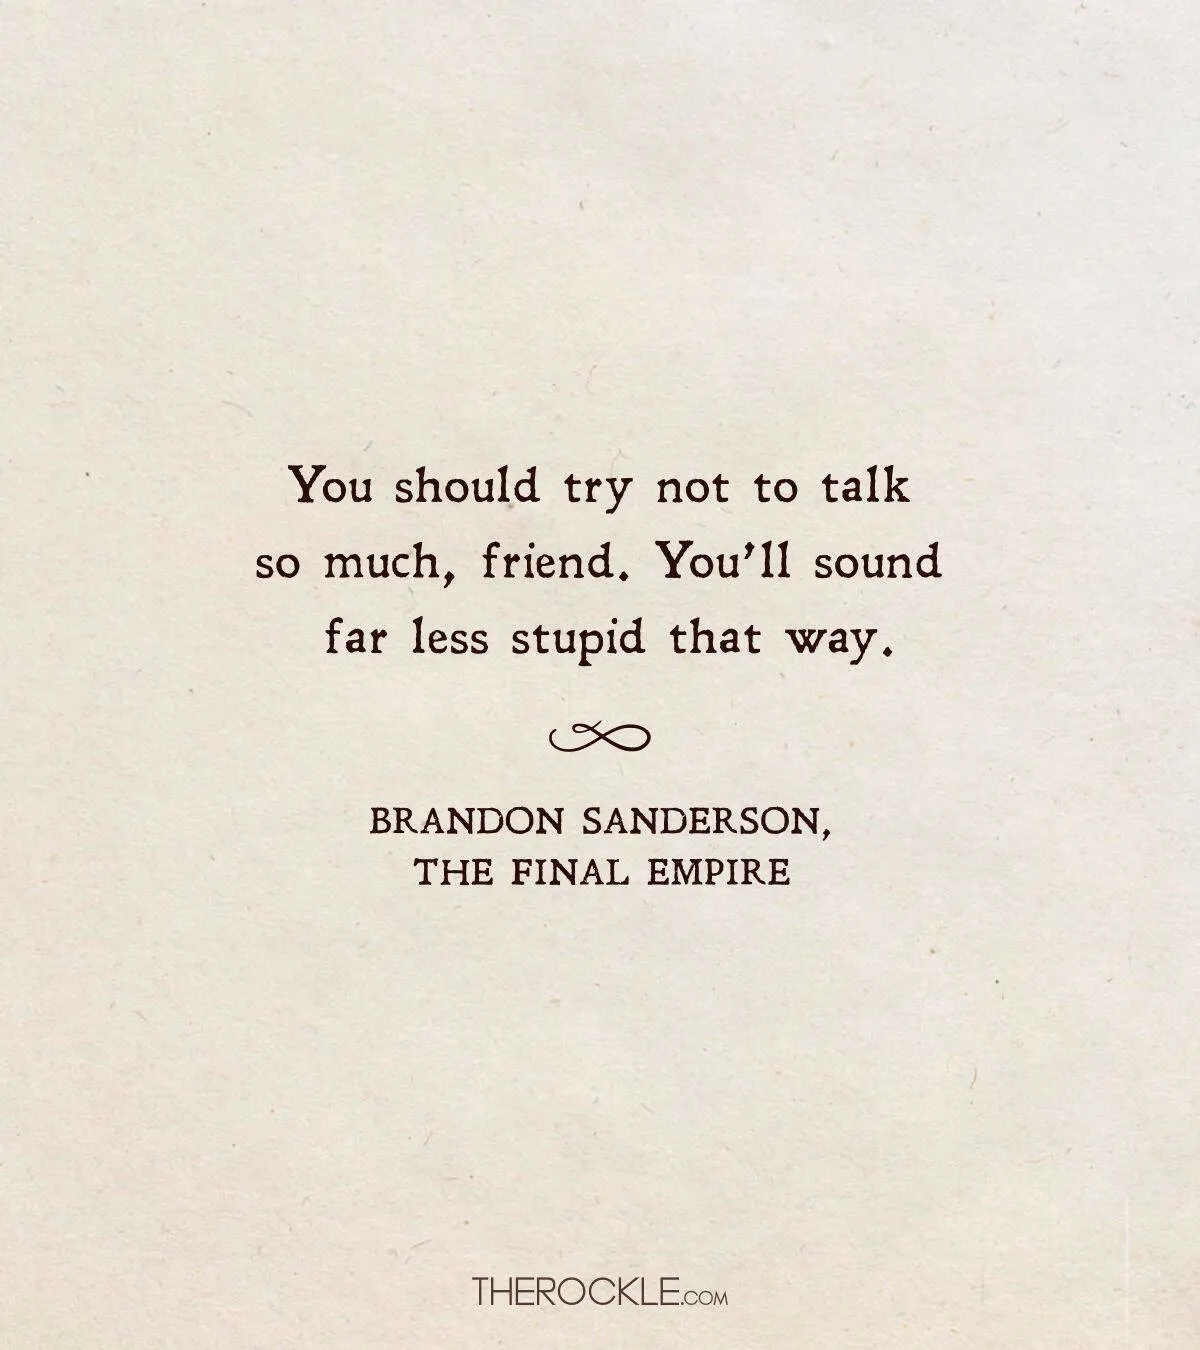 Funny Brandon Sanderson quote